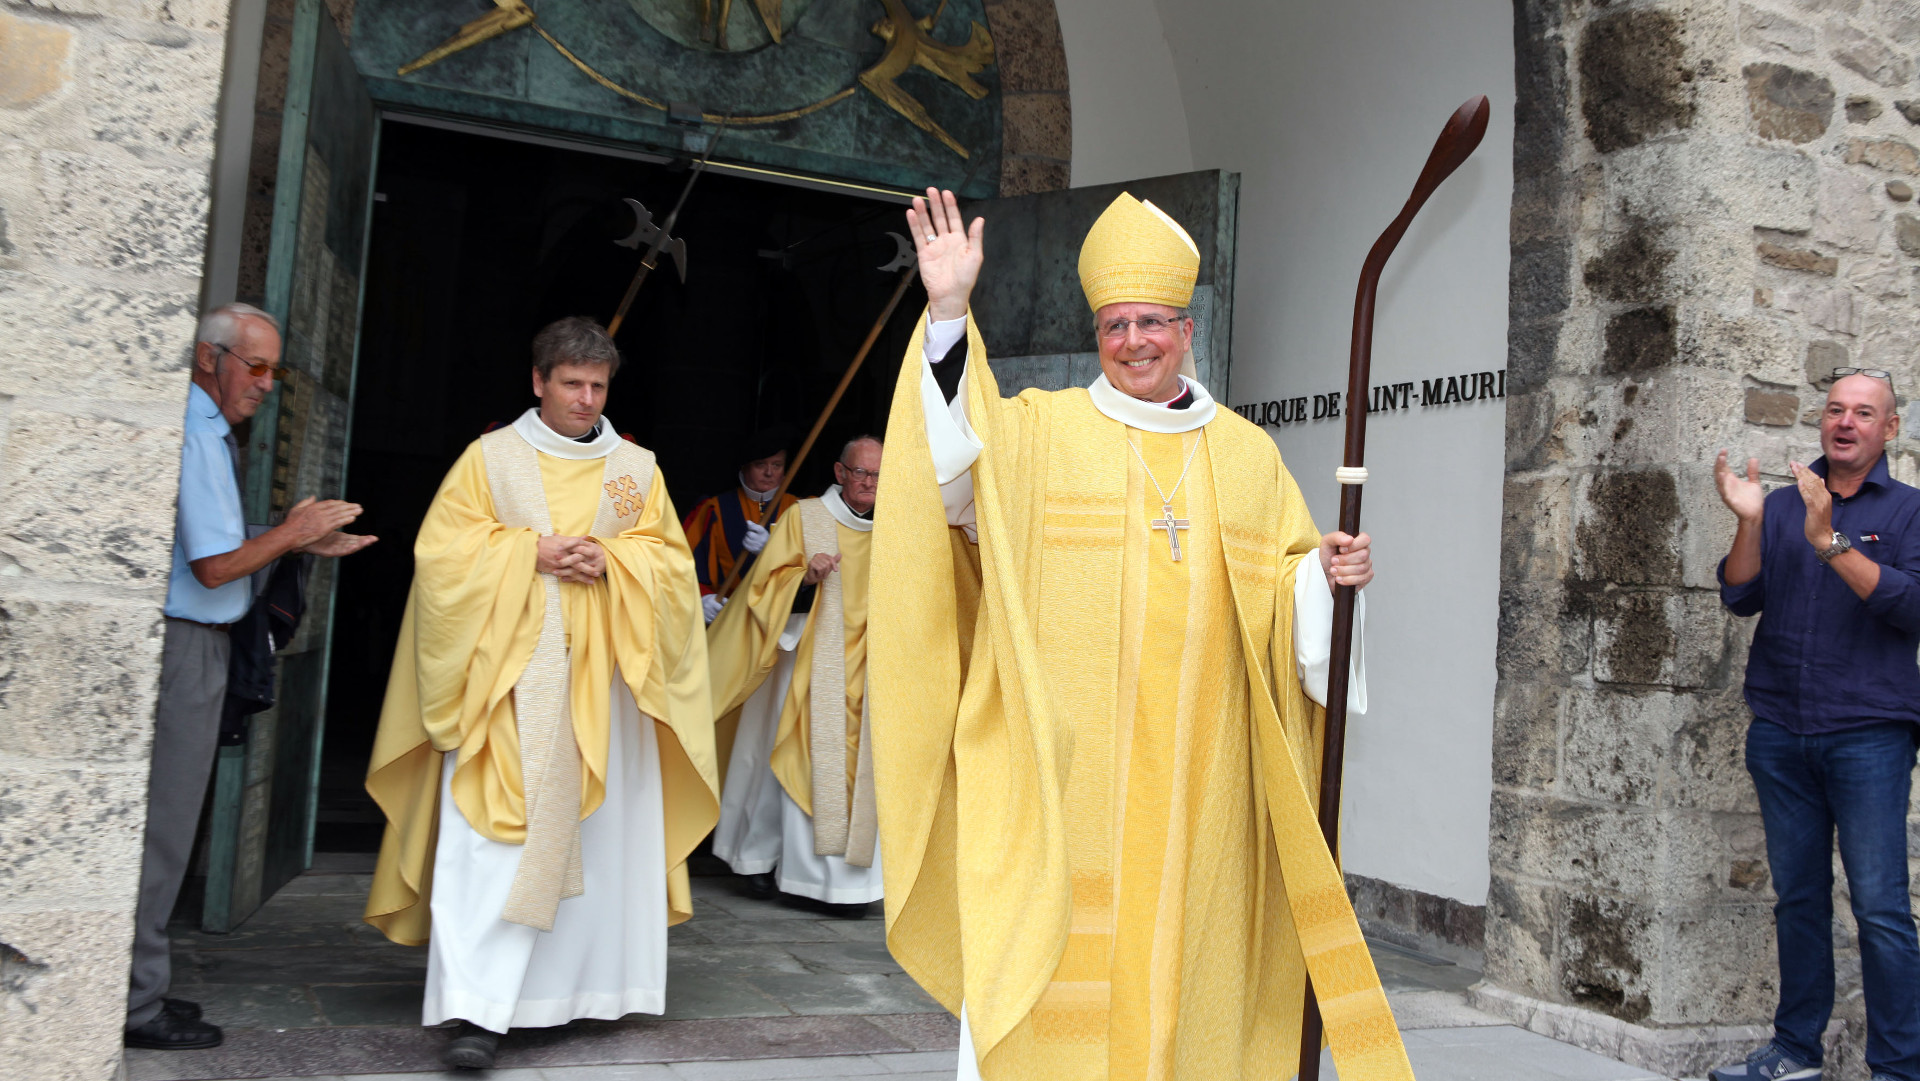 Der neue Abt von Saint-Maurice, Jean Scarcella, verlässt die Klosterkirche nach seiner Einsetzung am 1. August 2015.